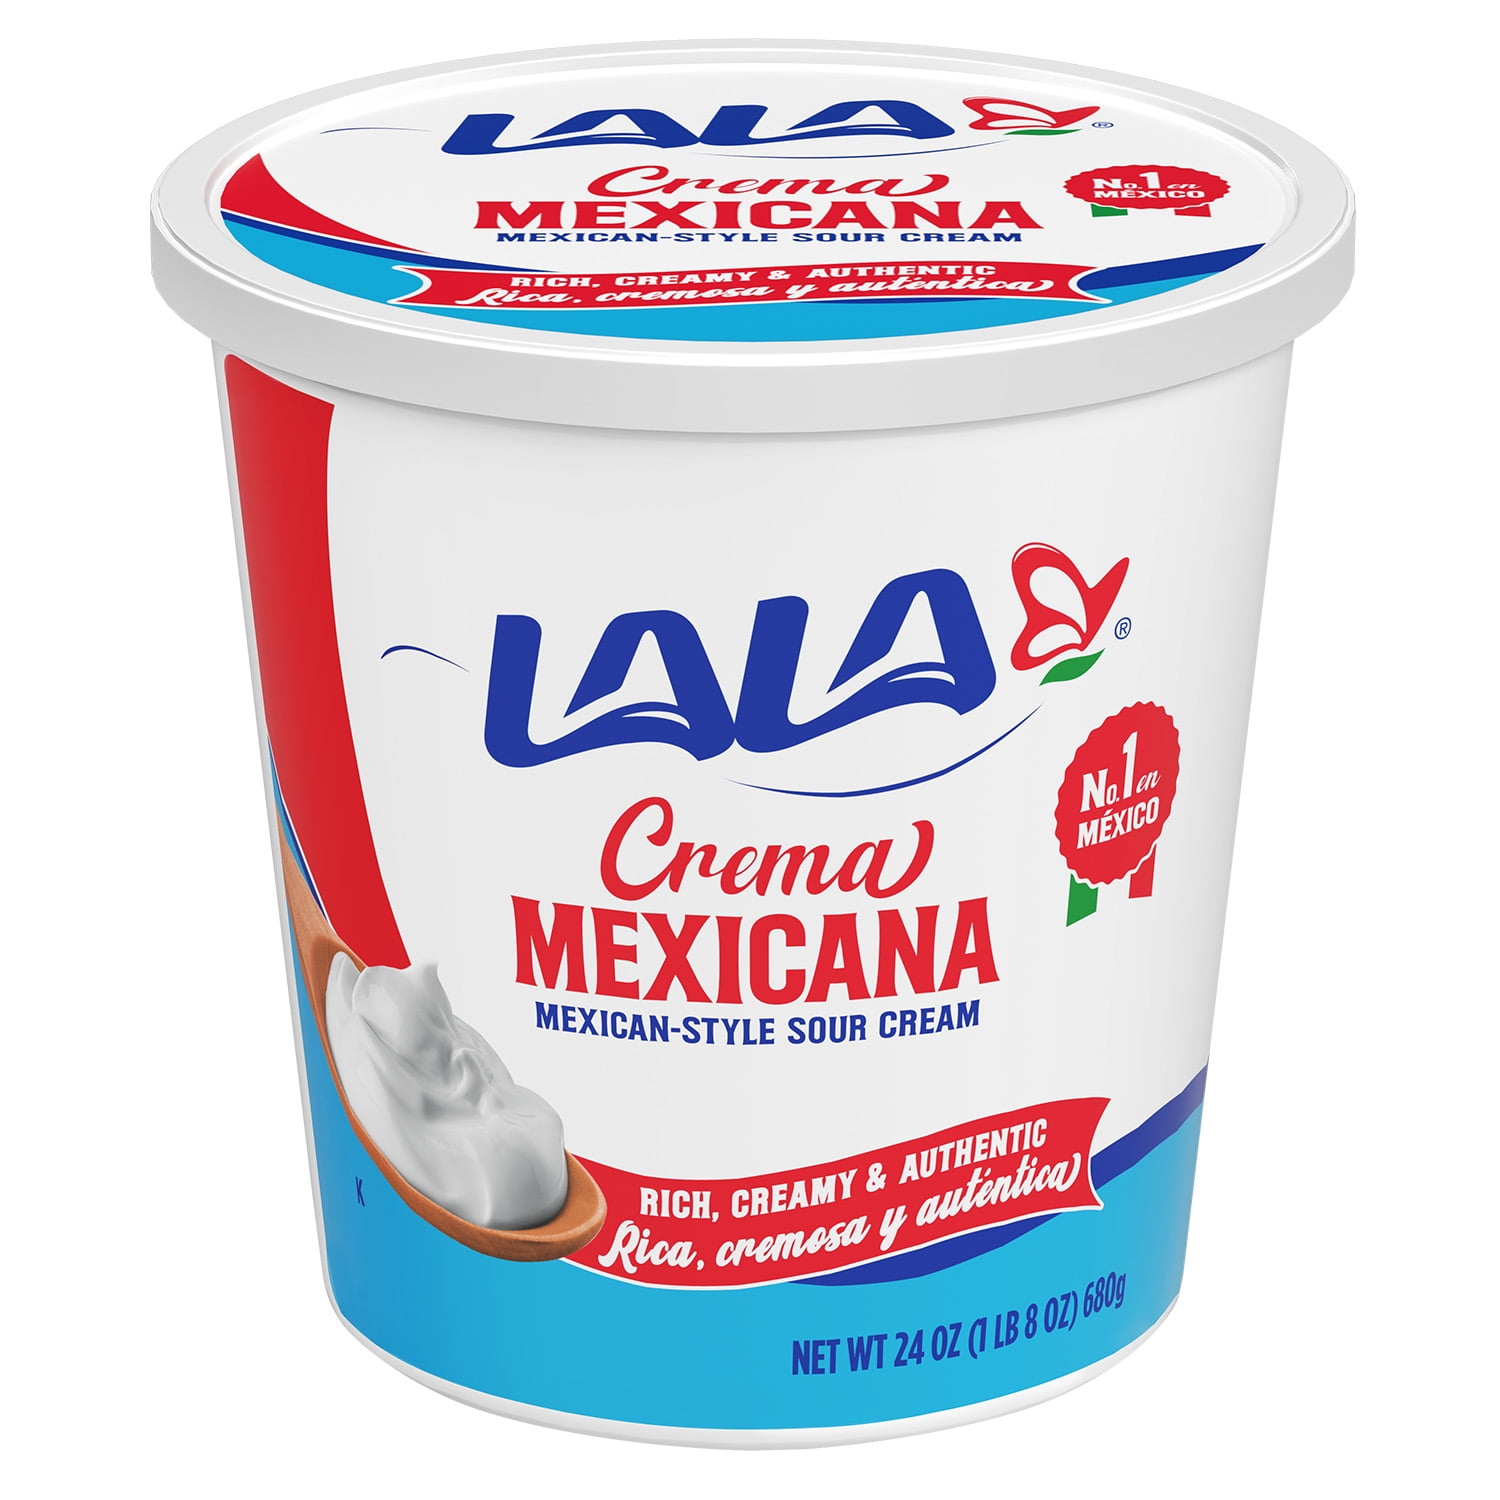 LALA Crema Mexicana Sour Cream, oz Tub 24 Refrigerated